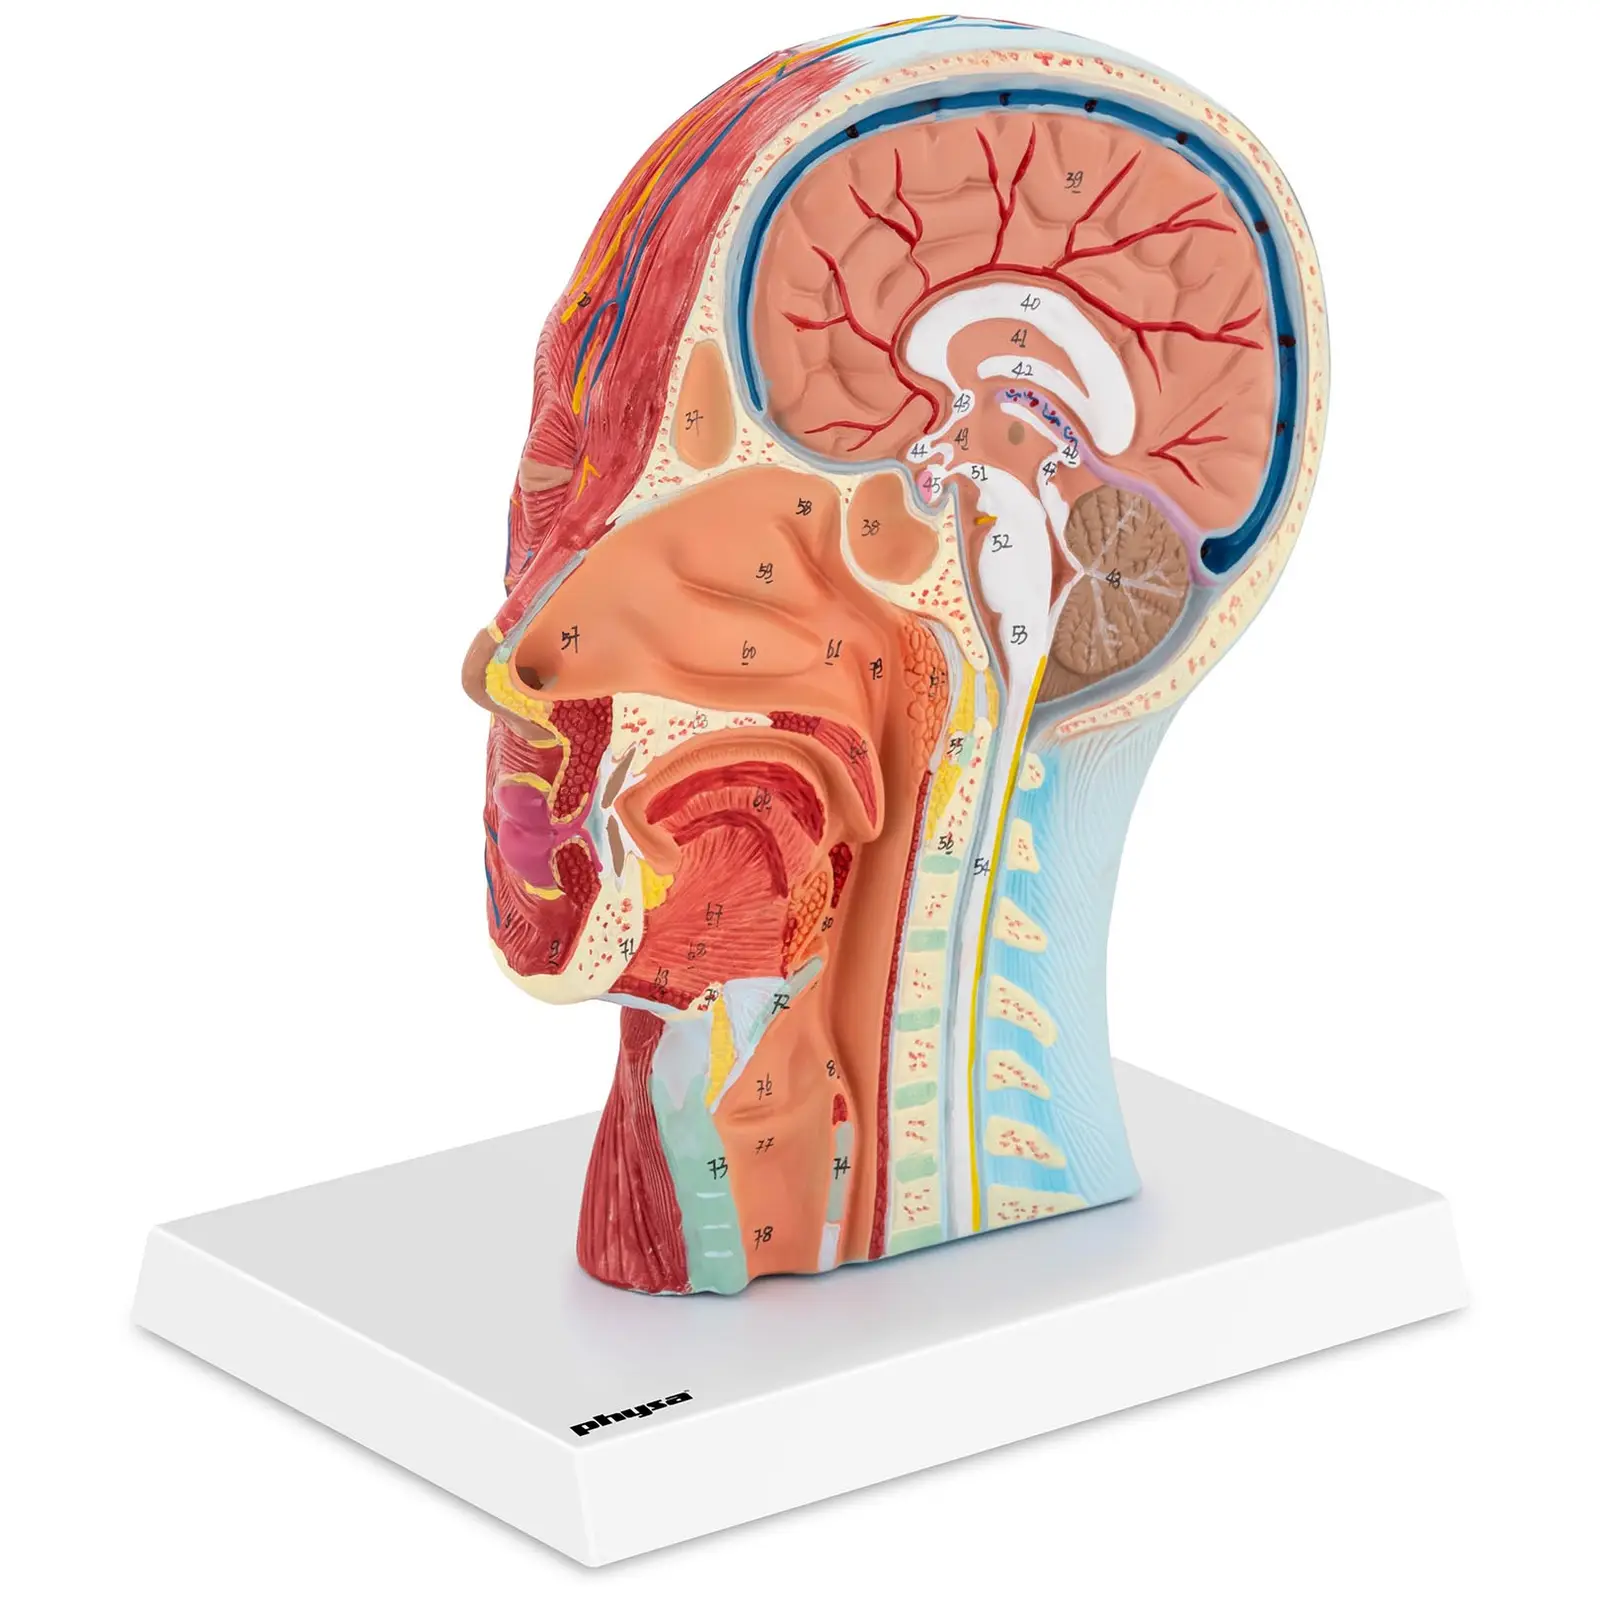 Modello anatomico della testa umana con collo - Sezione mediana - Grandezza naturale